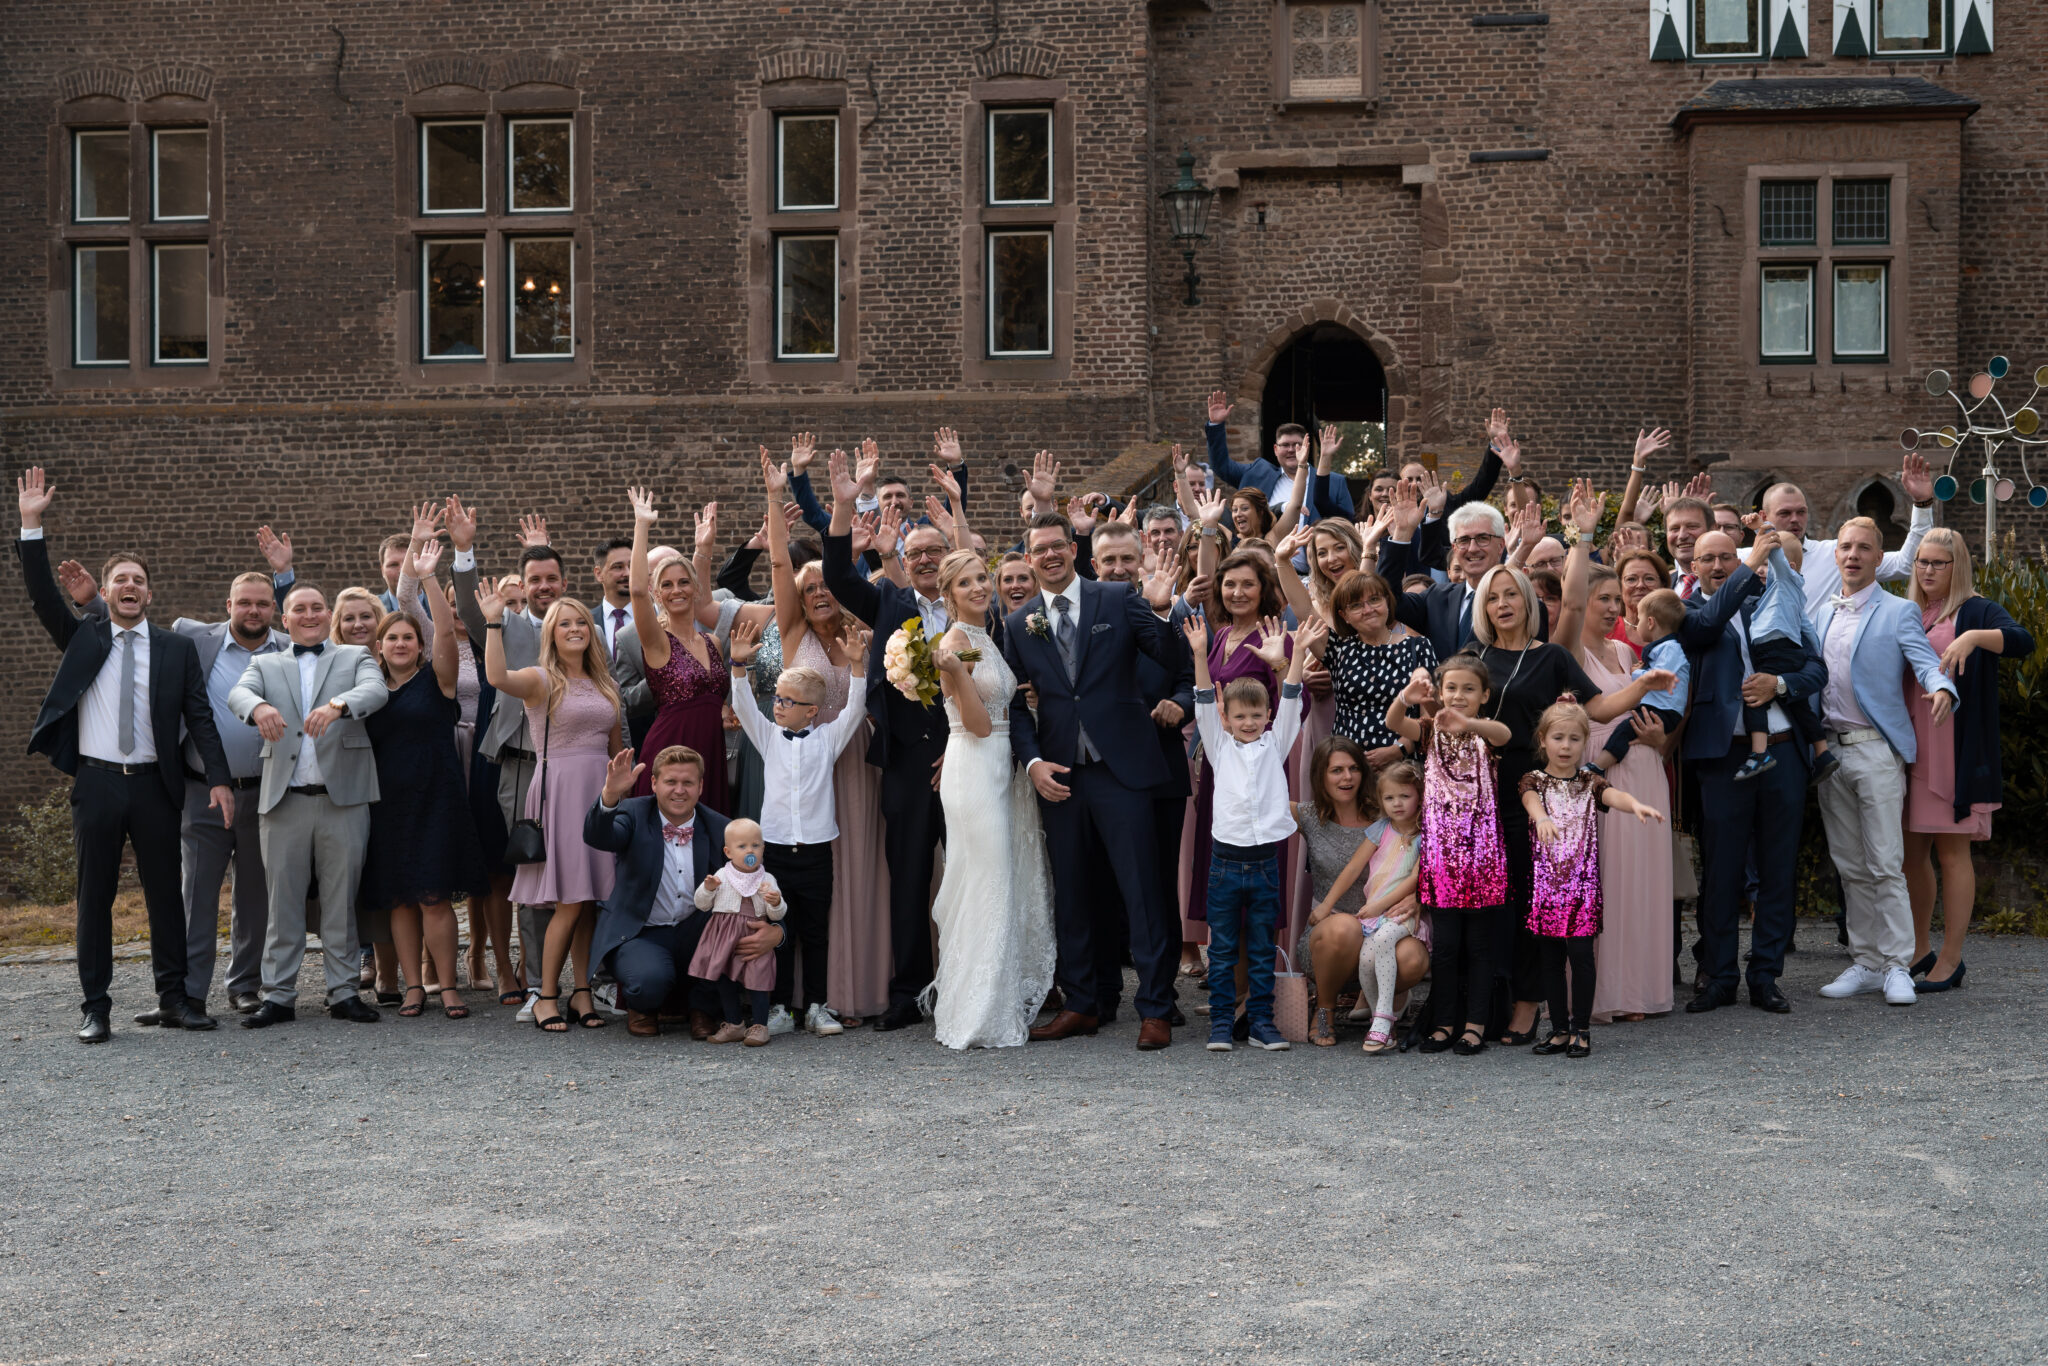 Gruppenfoto mit der gesamten Hochzeitsgesellschaft